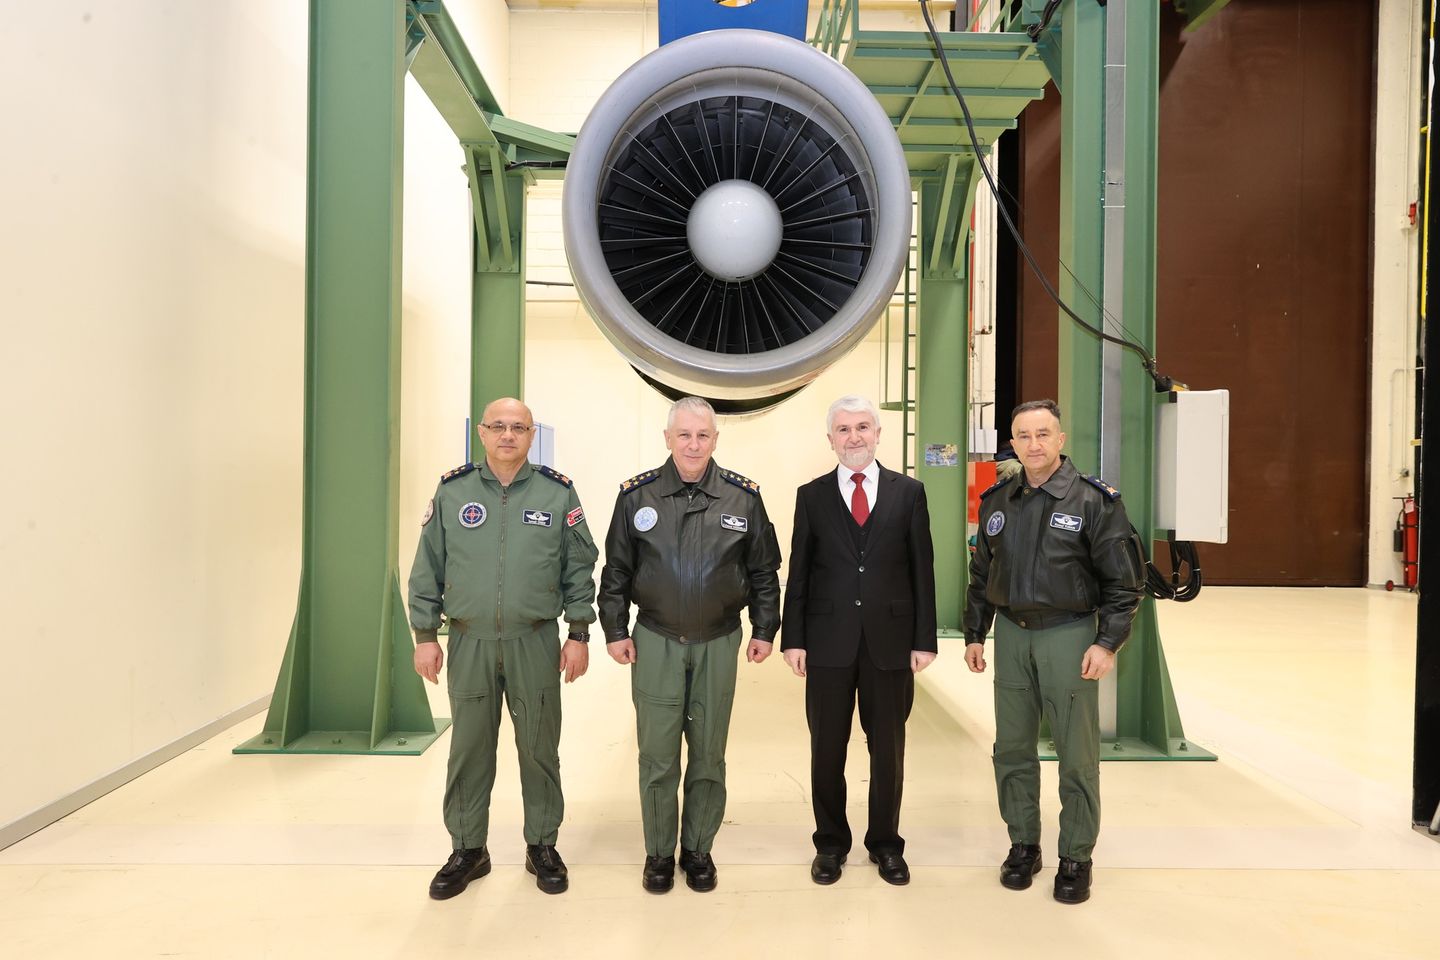 Hava Kuvvetleri Komutanlığı, Türkiye'nin yerli motor üretimi konusundaki ilerlemelerini yerinde gözlemledi.